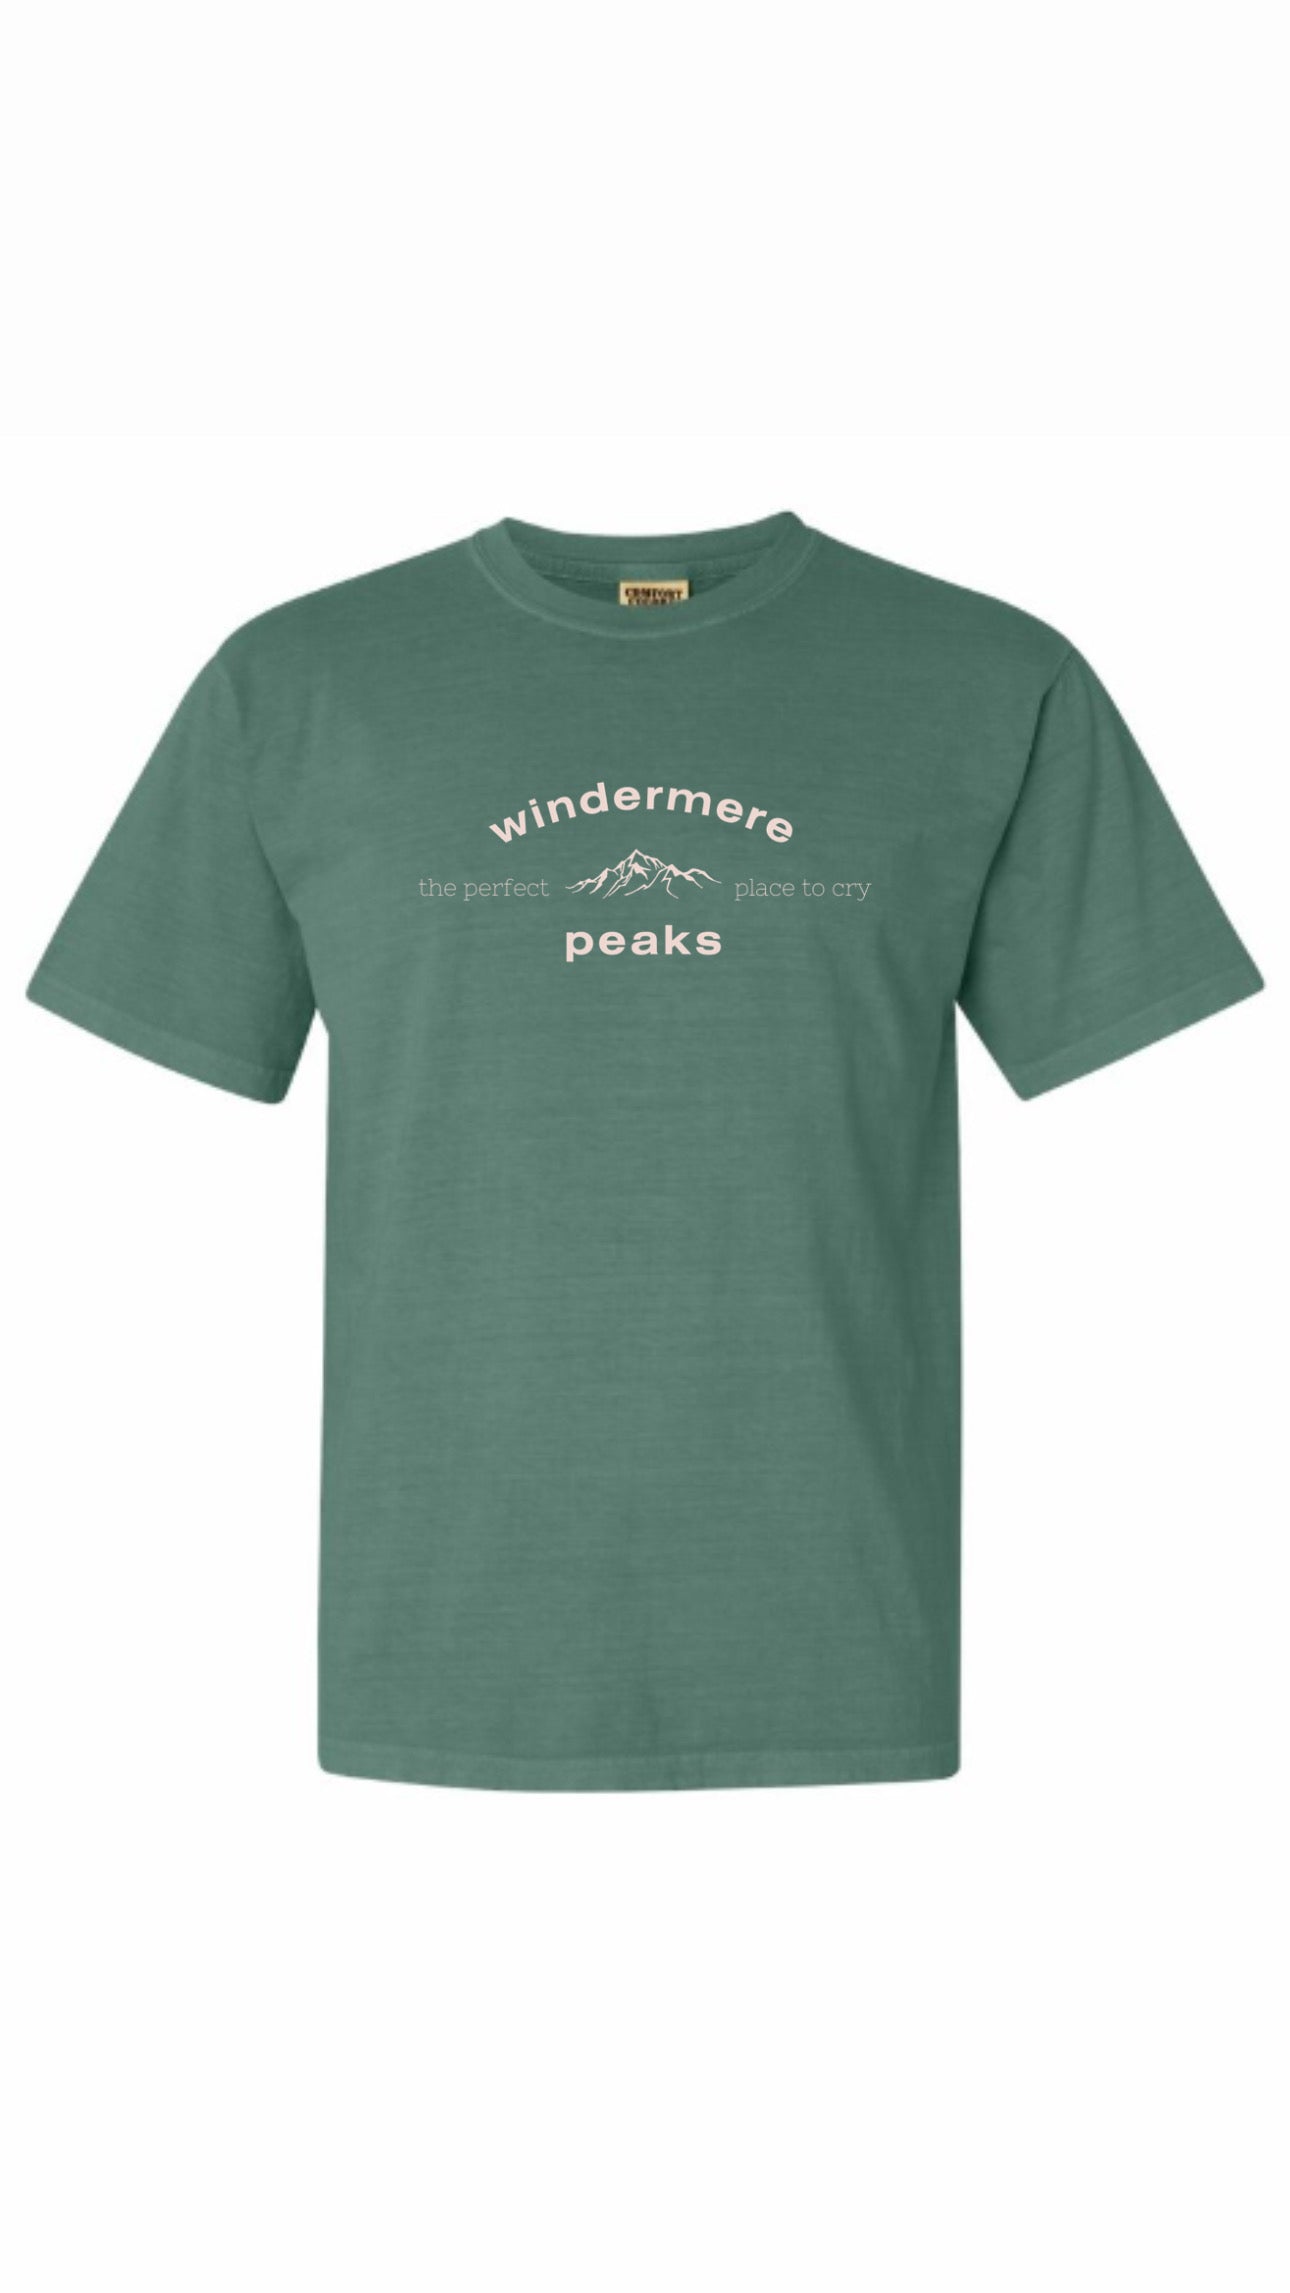 Windermere Peaks - Folklore